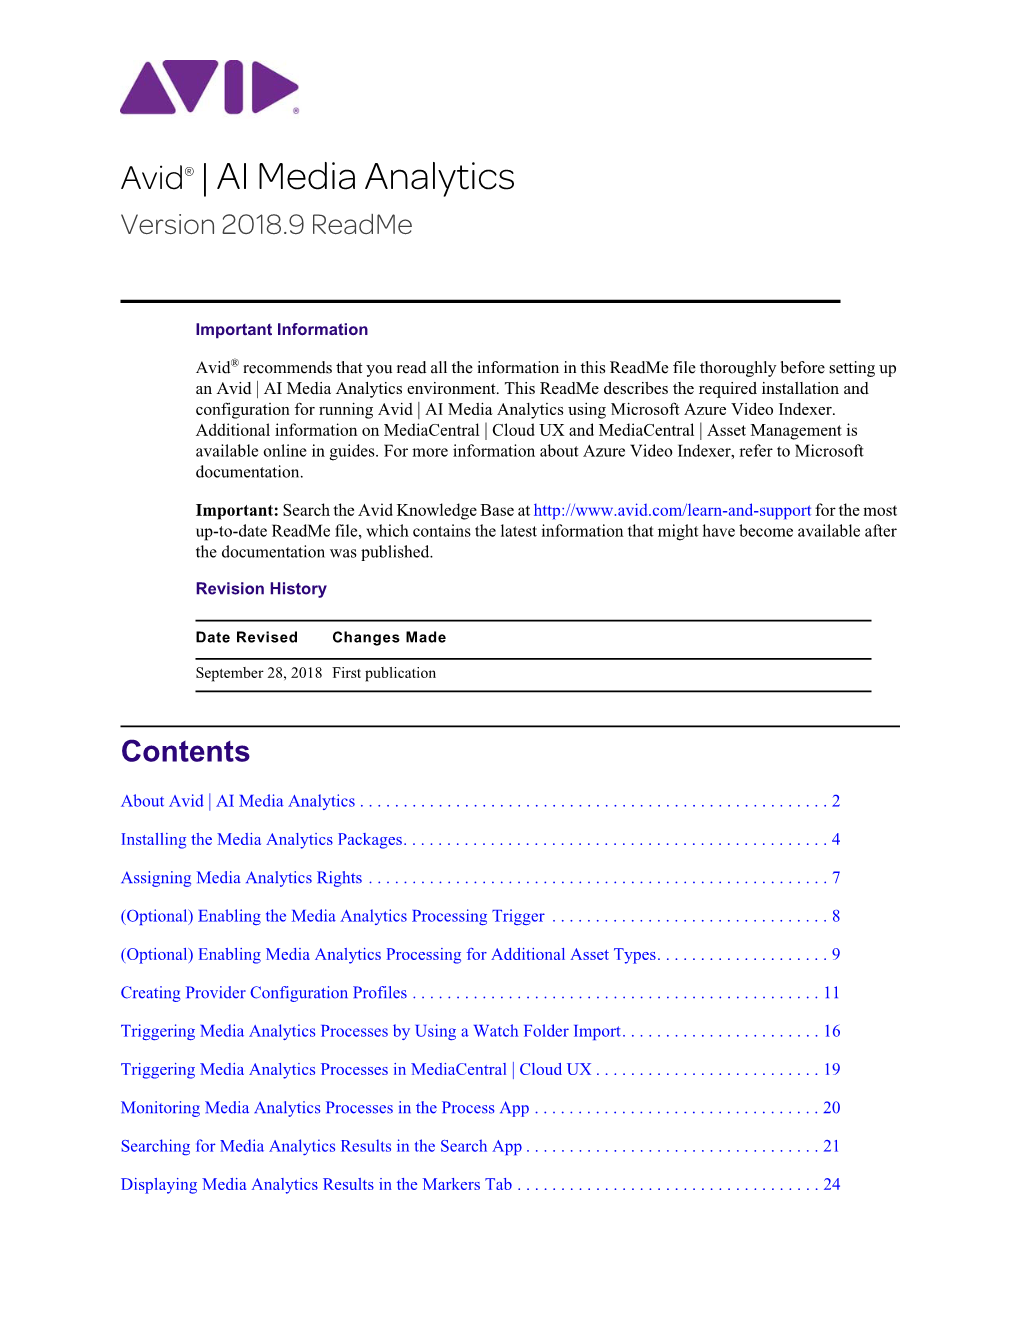 AI Media Analytics Readme